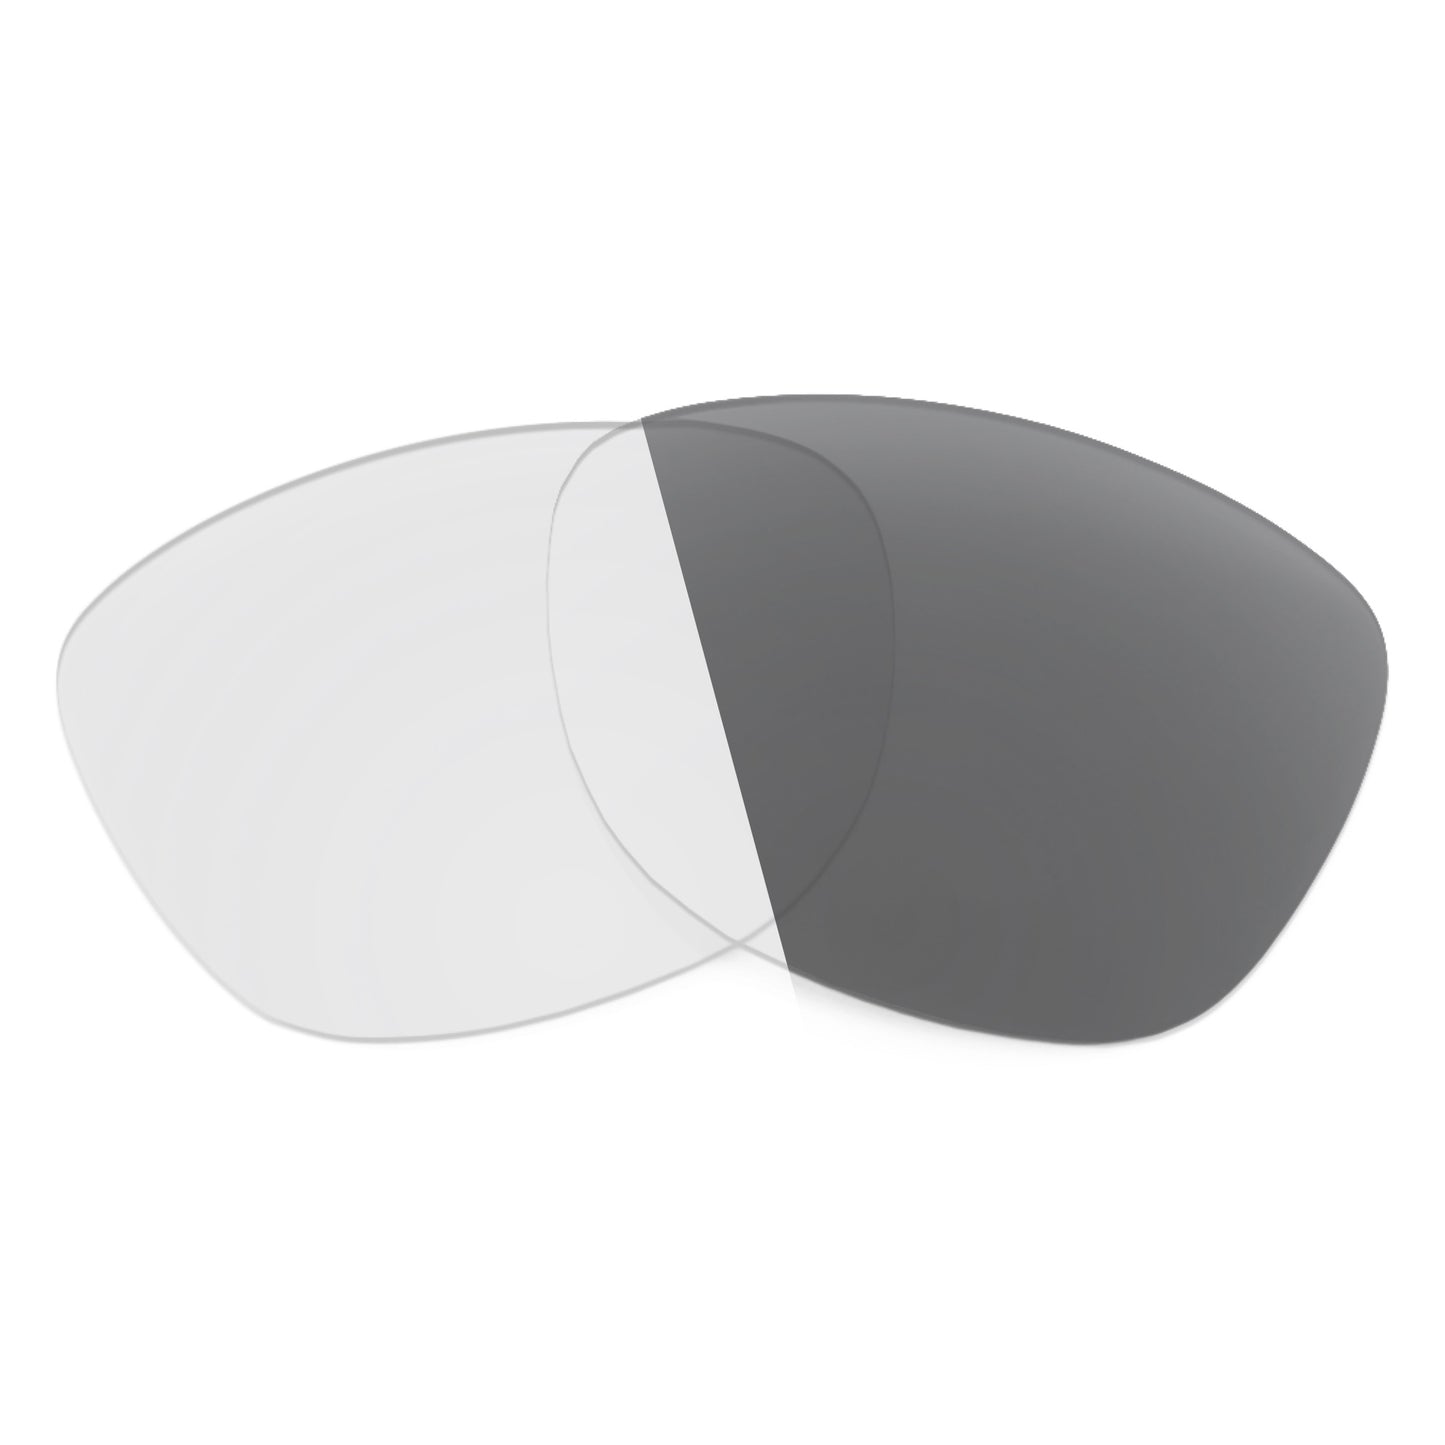 Revant replacement lenses for Arnette Woke AN4252 Non-Polarized Adapt Gray Photochromic